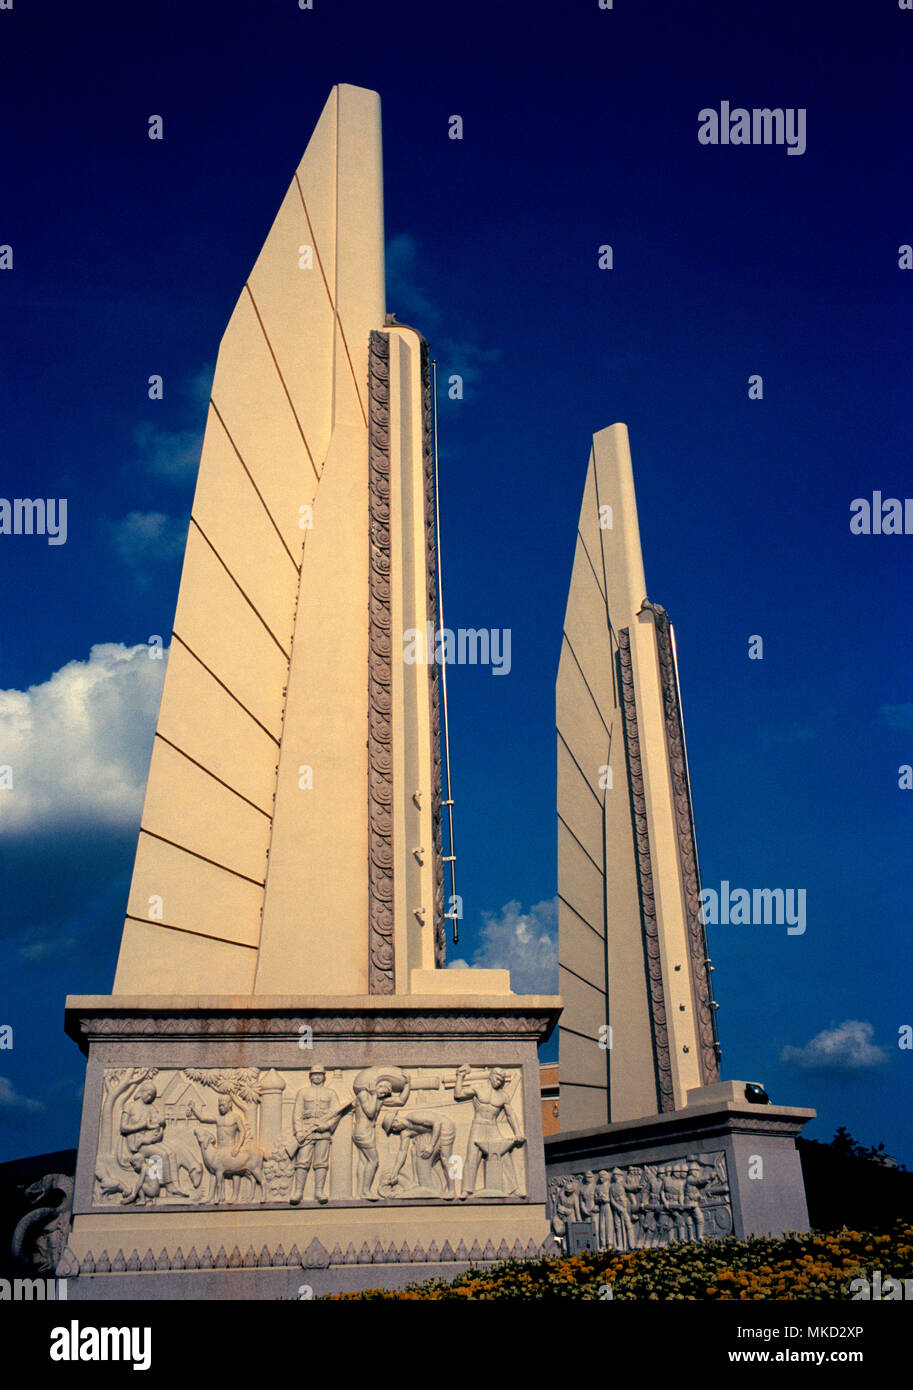 Storia tailandese - Democrazia monumento Prachathipatal Anusawari edificio in Bangkok in Thailandia nel sud-est asiatico in Estremo Oriente. Architettura arte Travel Foto Stock